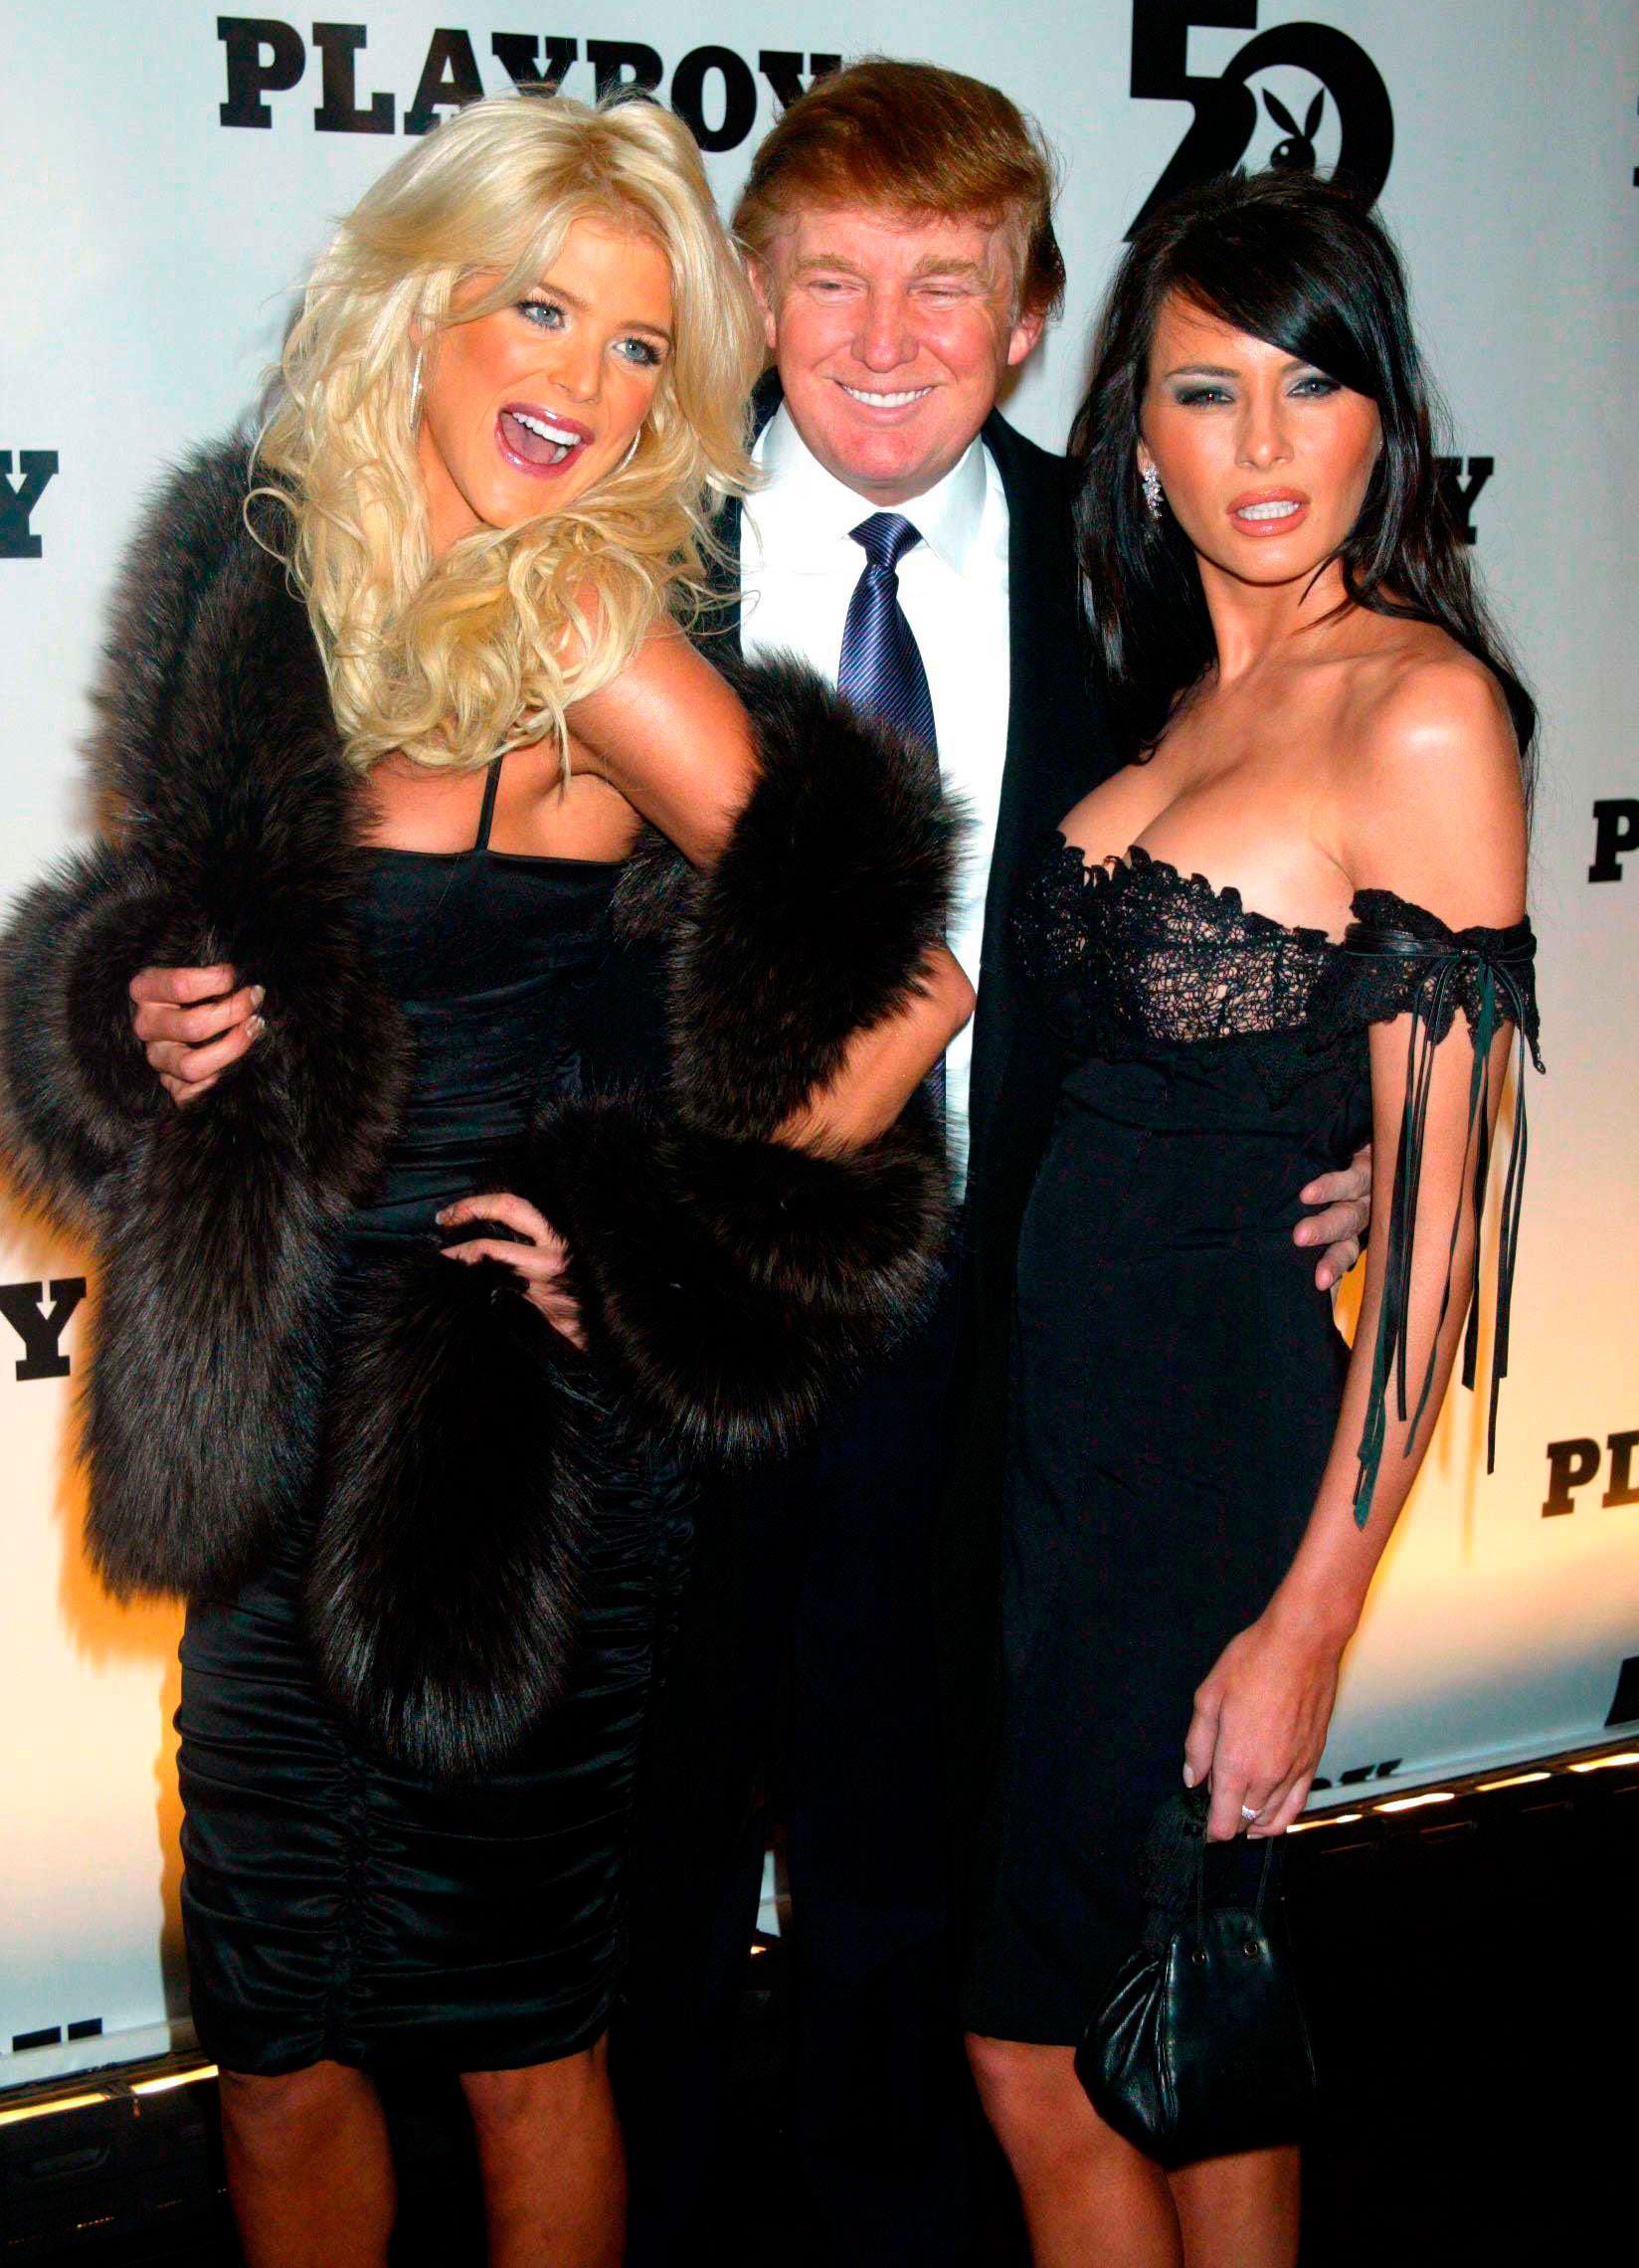 Victoria Silvstedt med Donald Trump och Melania Knauss (som senare blev fru Trump) på Playboys 50-års jubileum 2003.